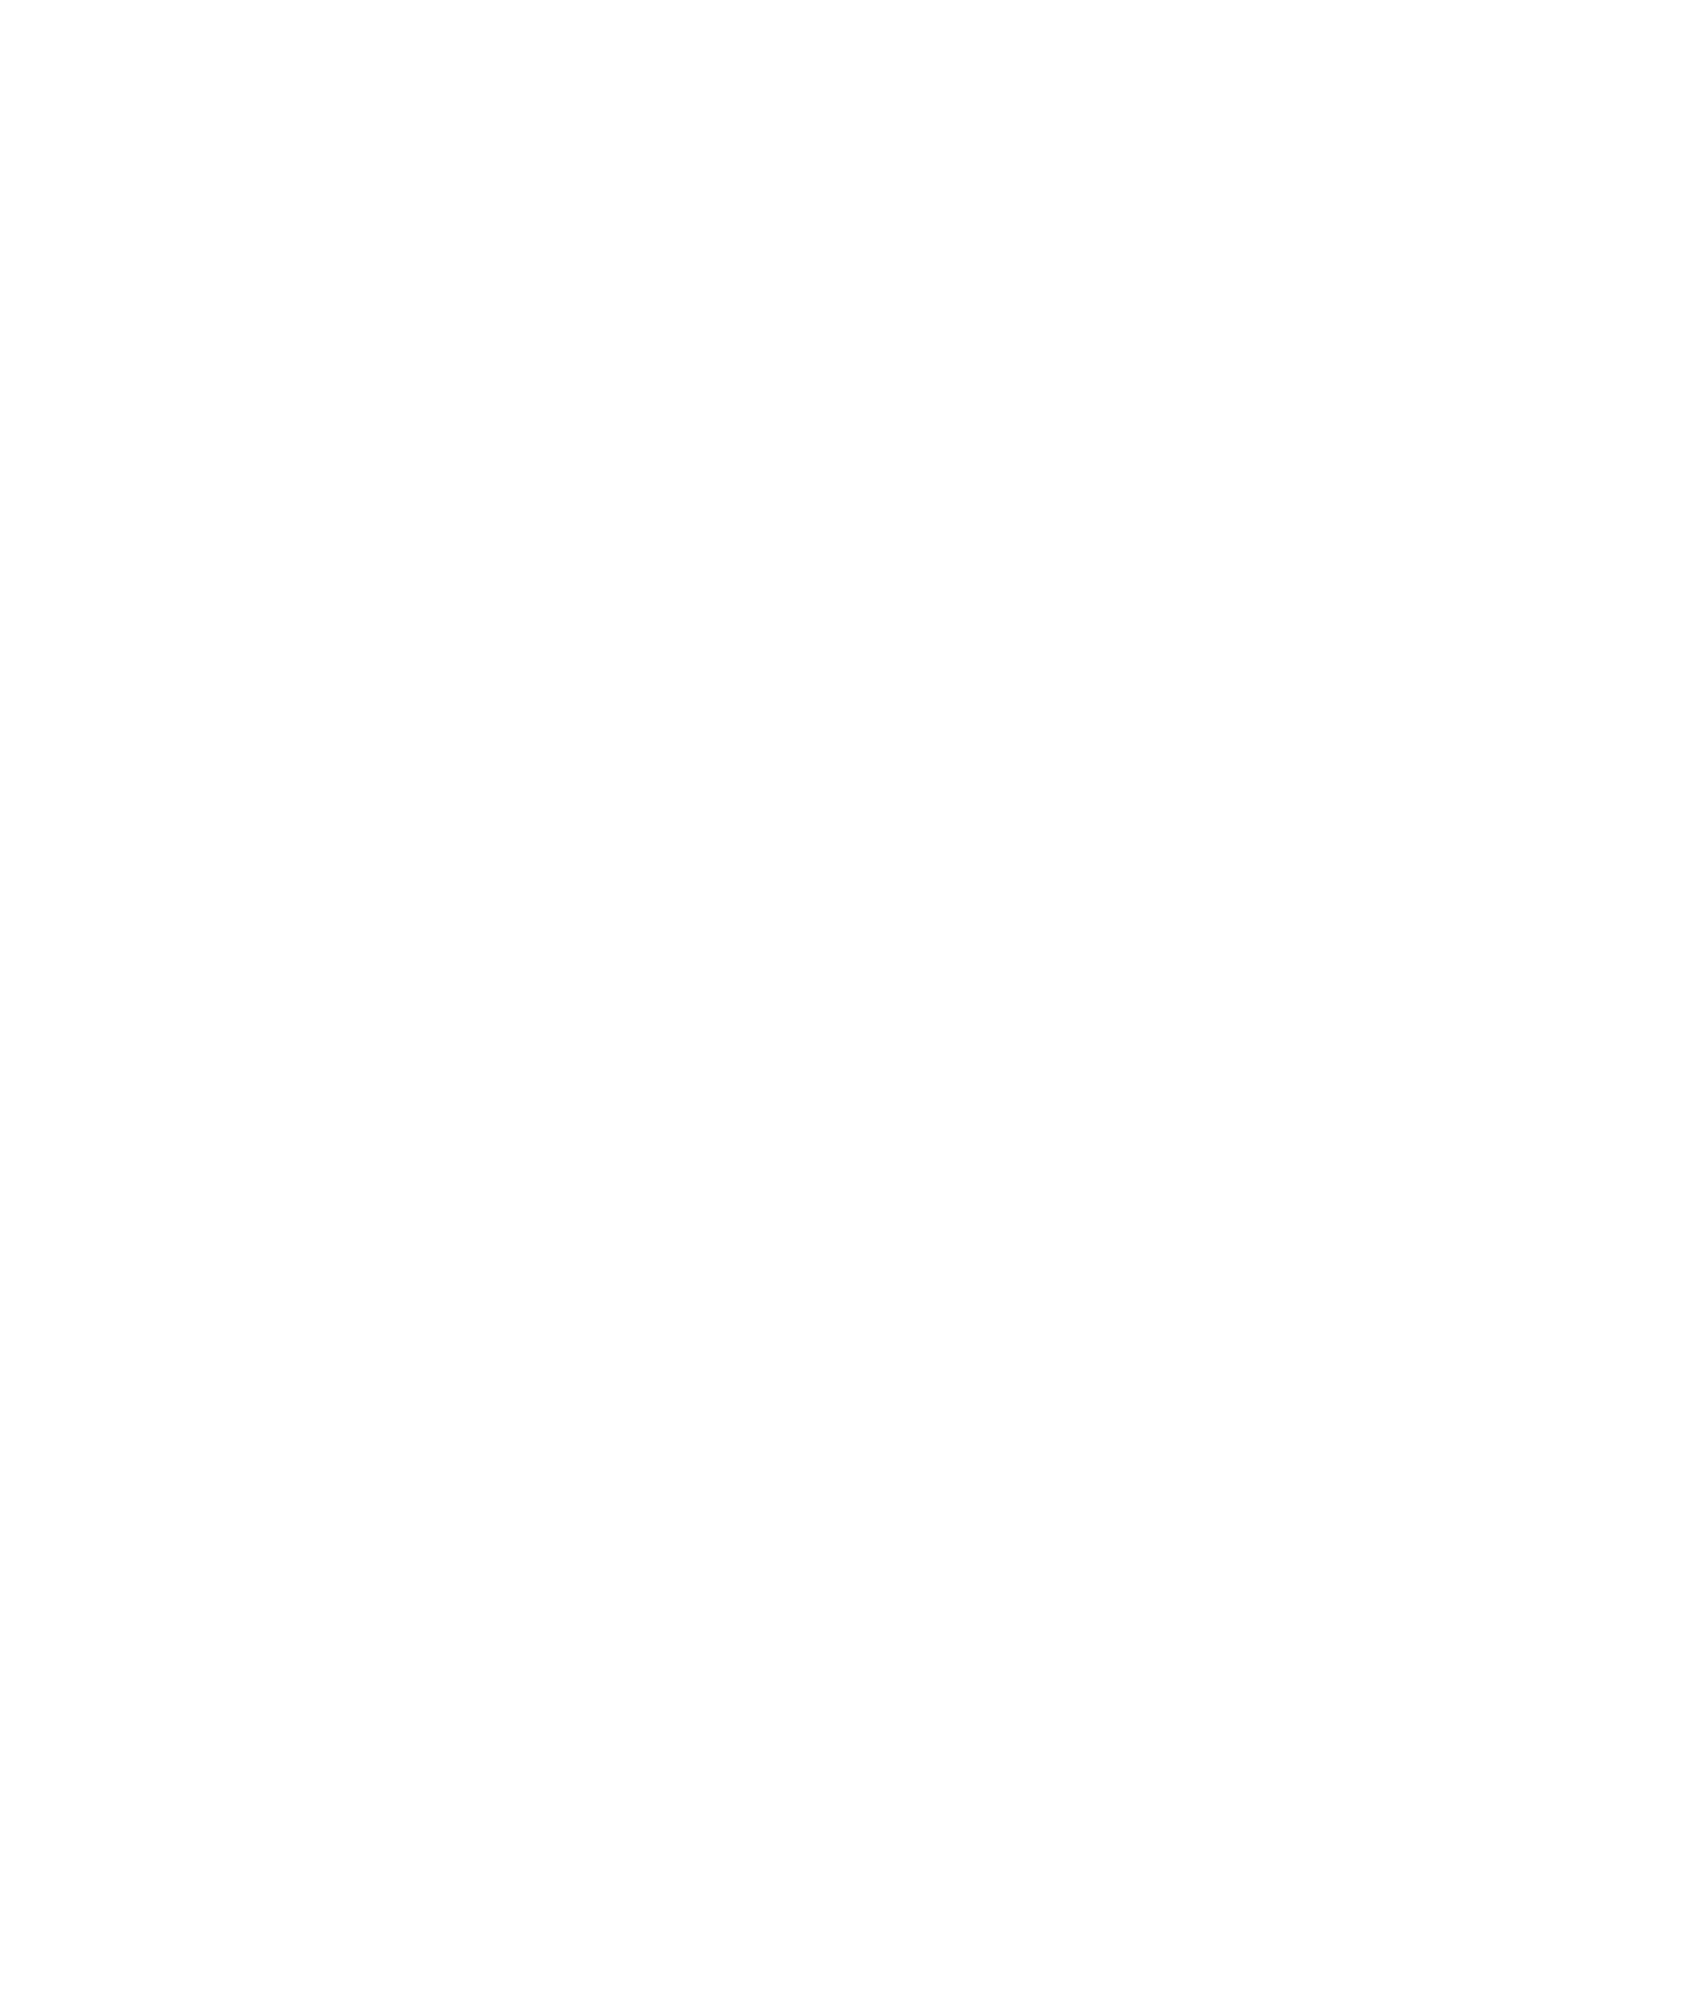 Friedmans logo